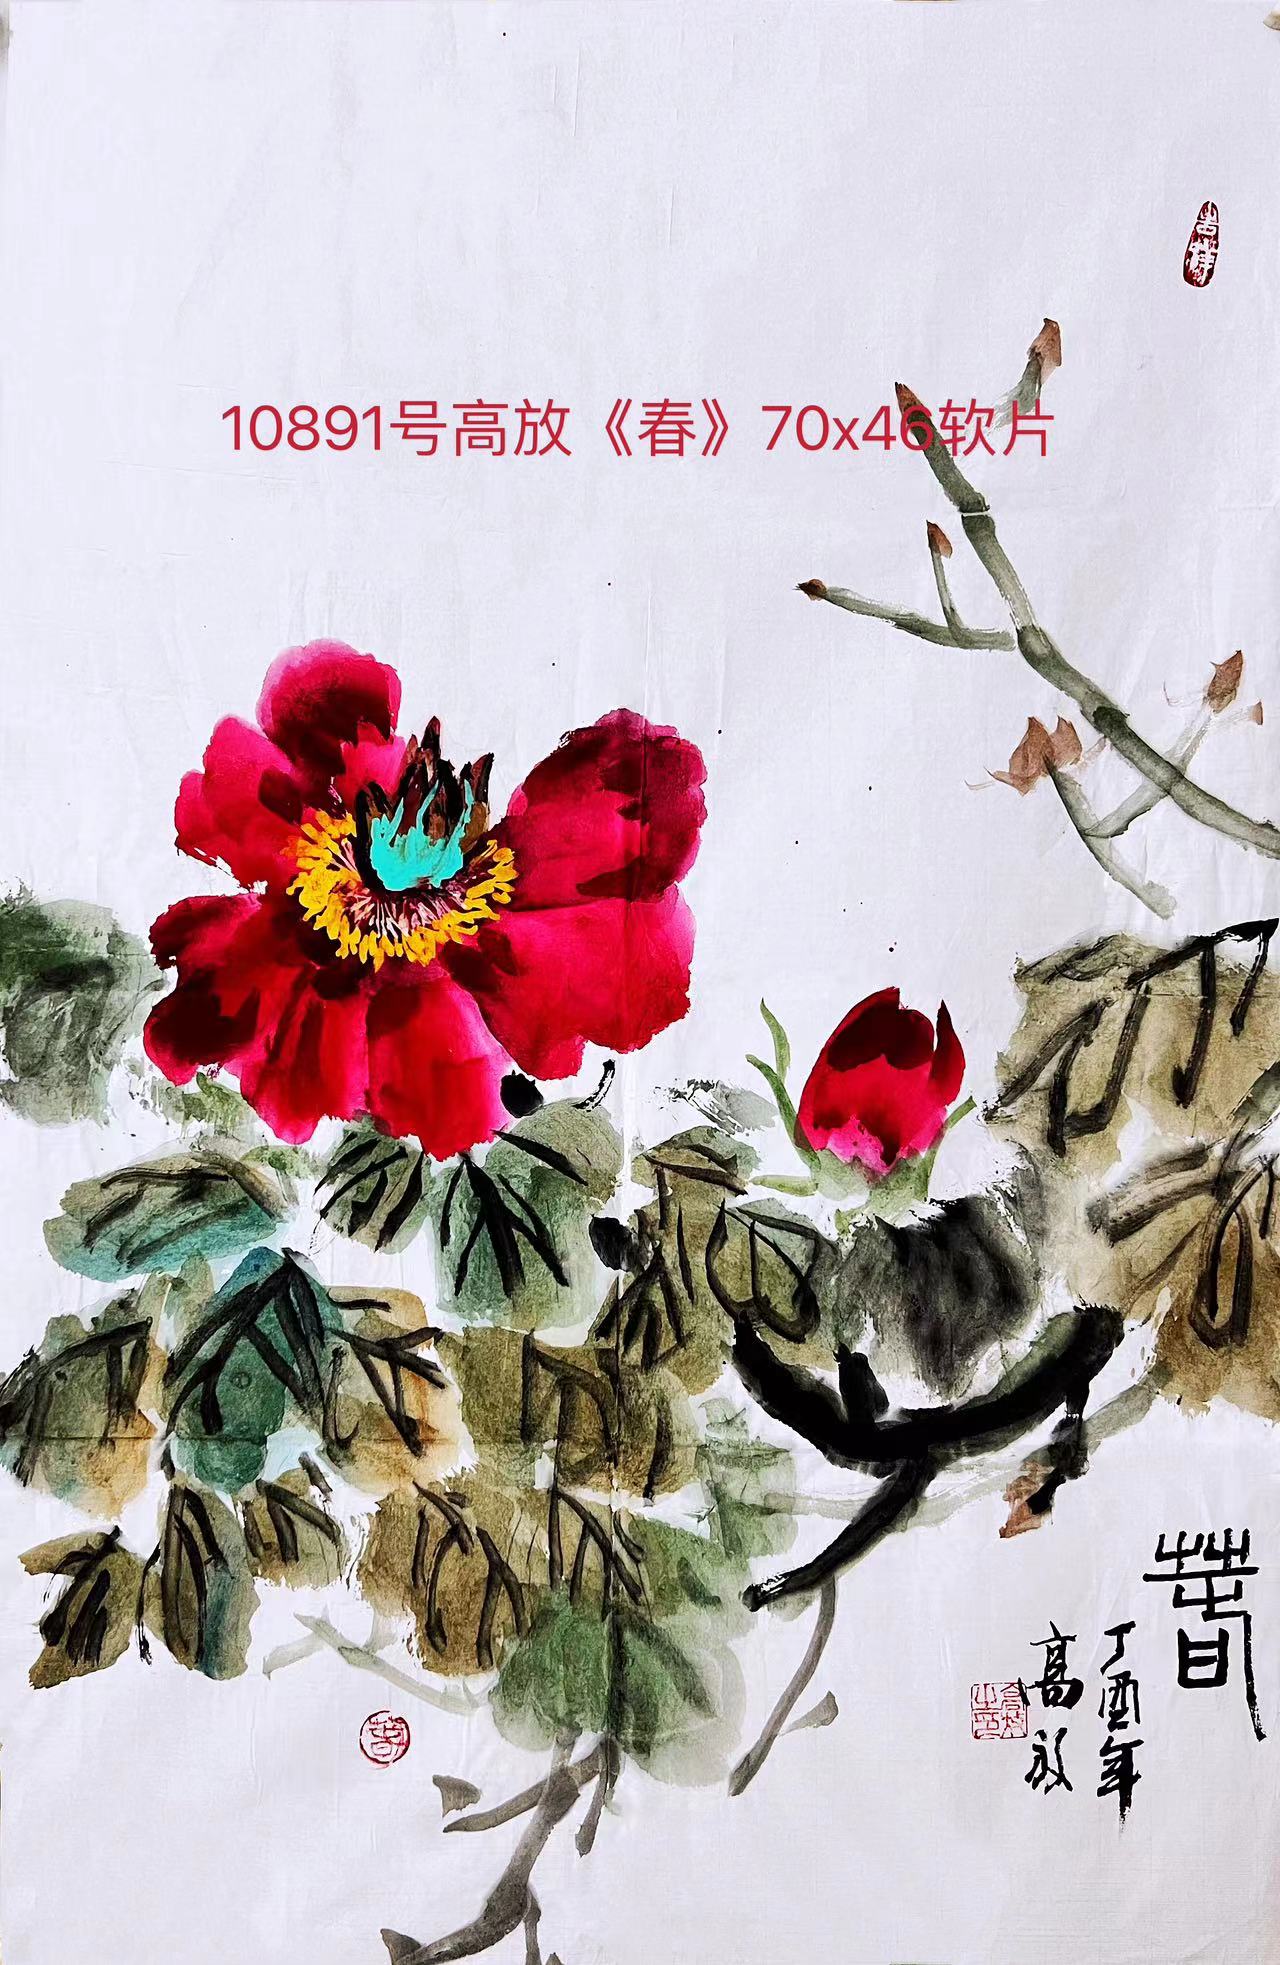 10891号高放《春》70x46软片【】.jpg